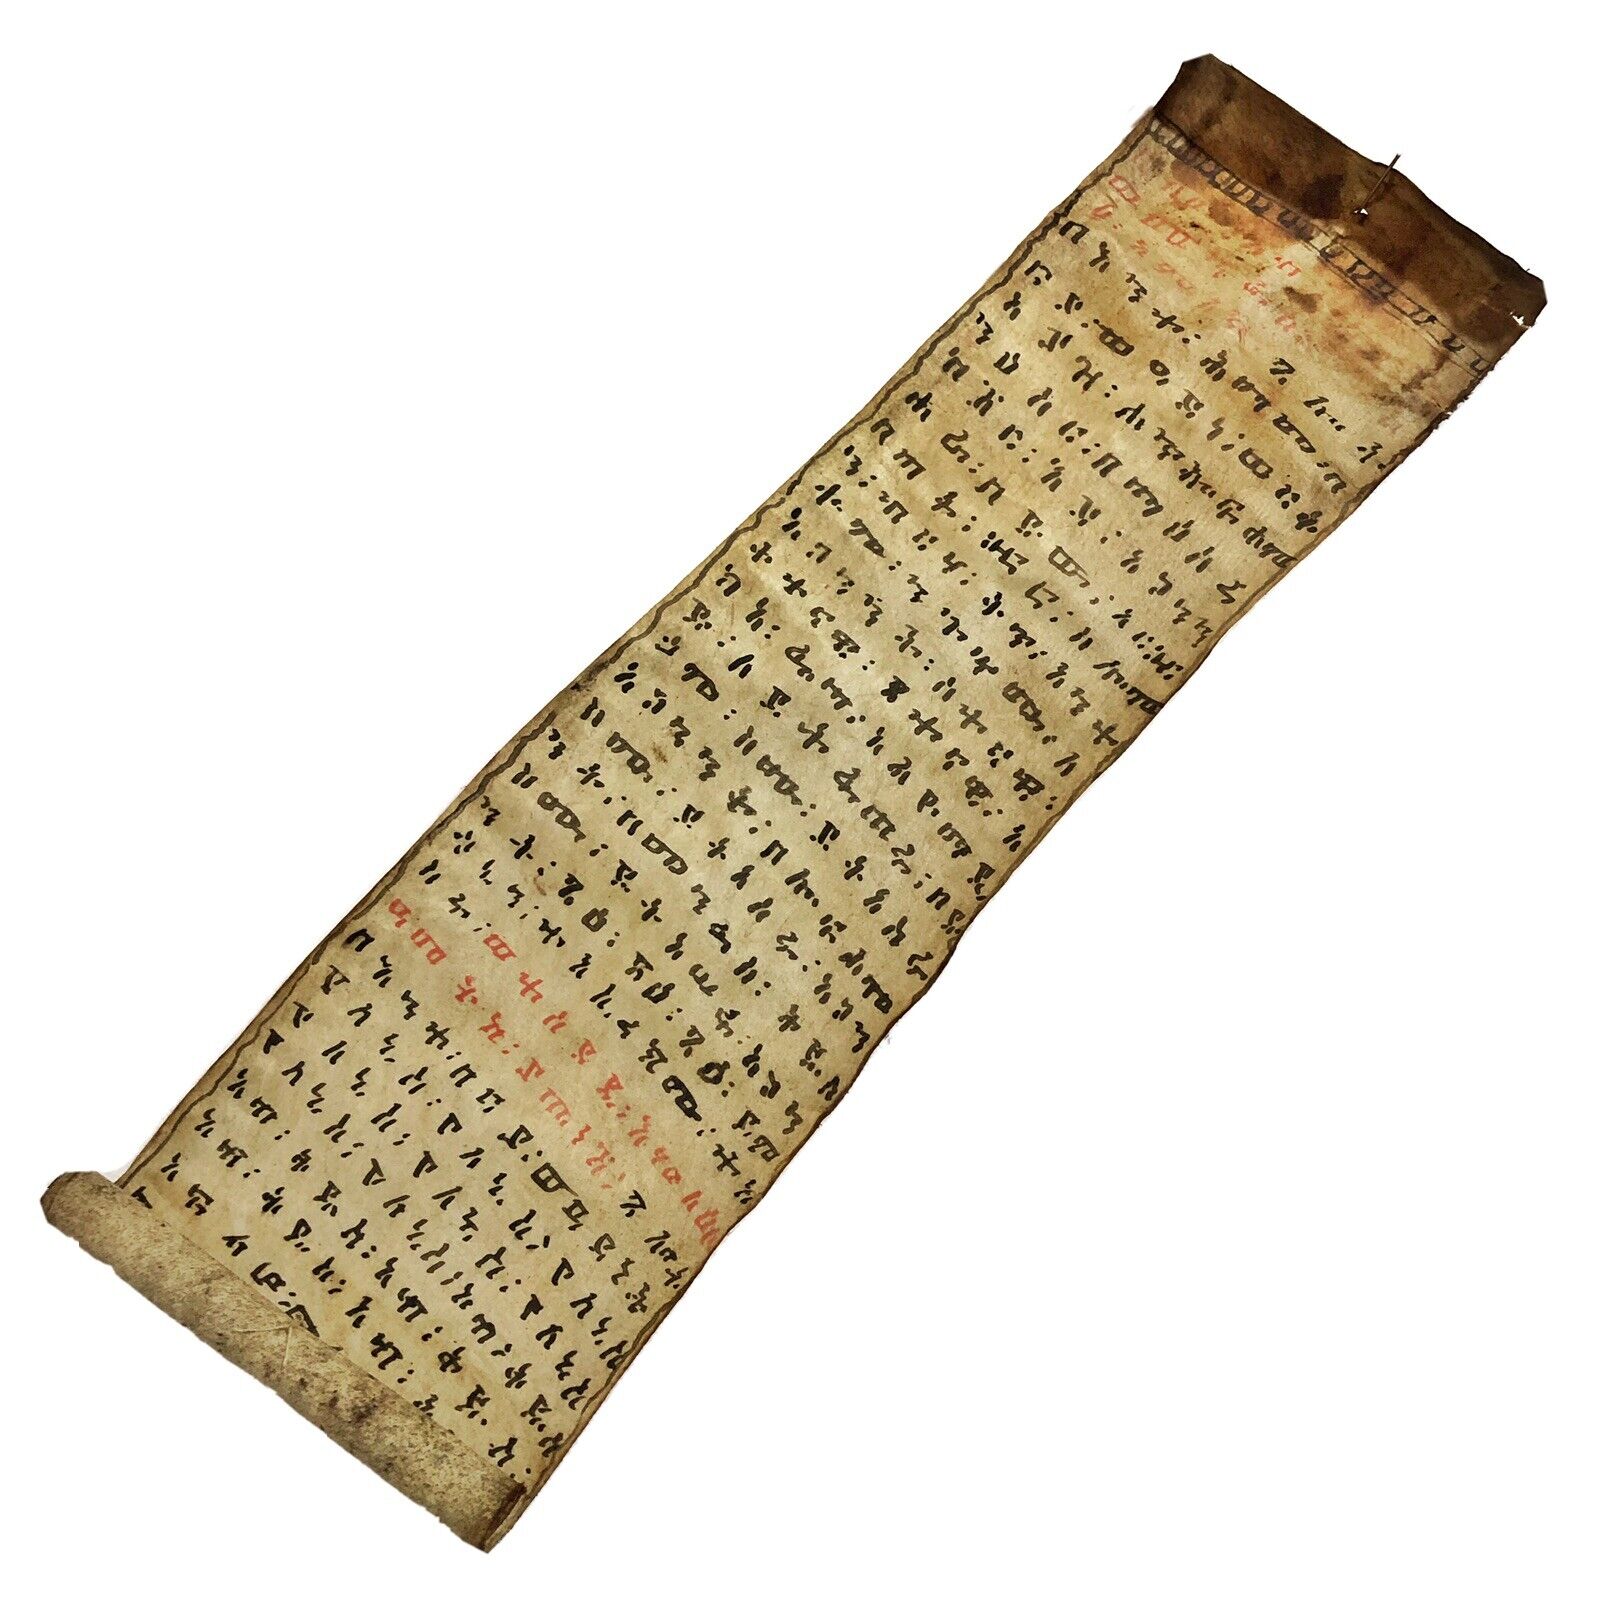 Rare 15-17th Century Ethiopian Ge’ez Coptic Christian Vellum Scroll Manuscript